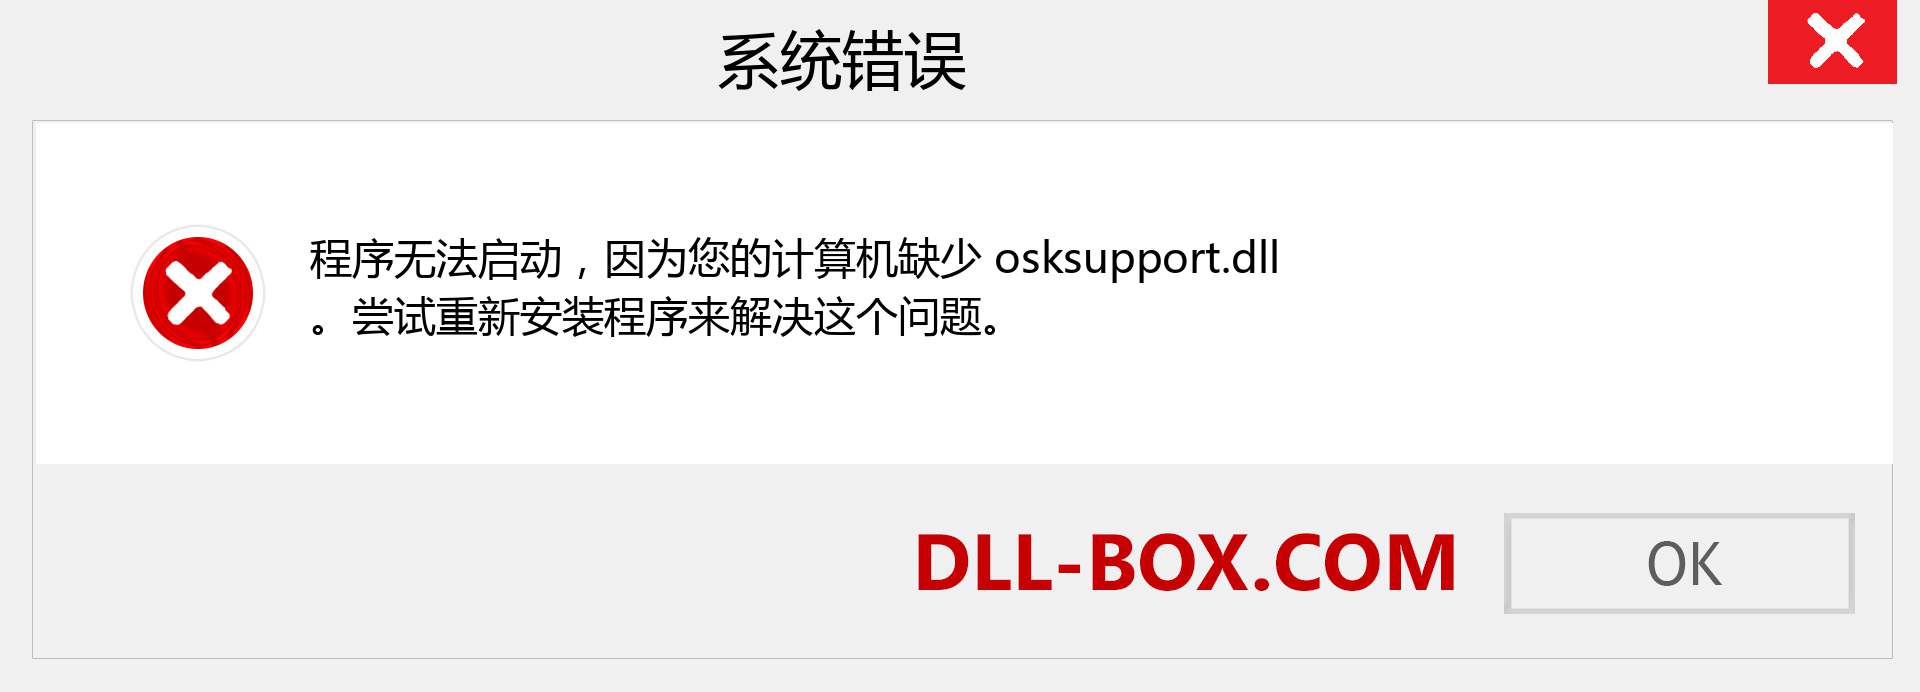 osksupport.dll 文件丢失？。 适用于 Windows 7、8、10 的下载 - 修复 Windows、照片、图像上的 osksupport dll 丢失错误